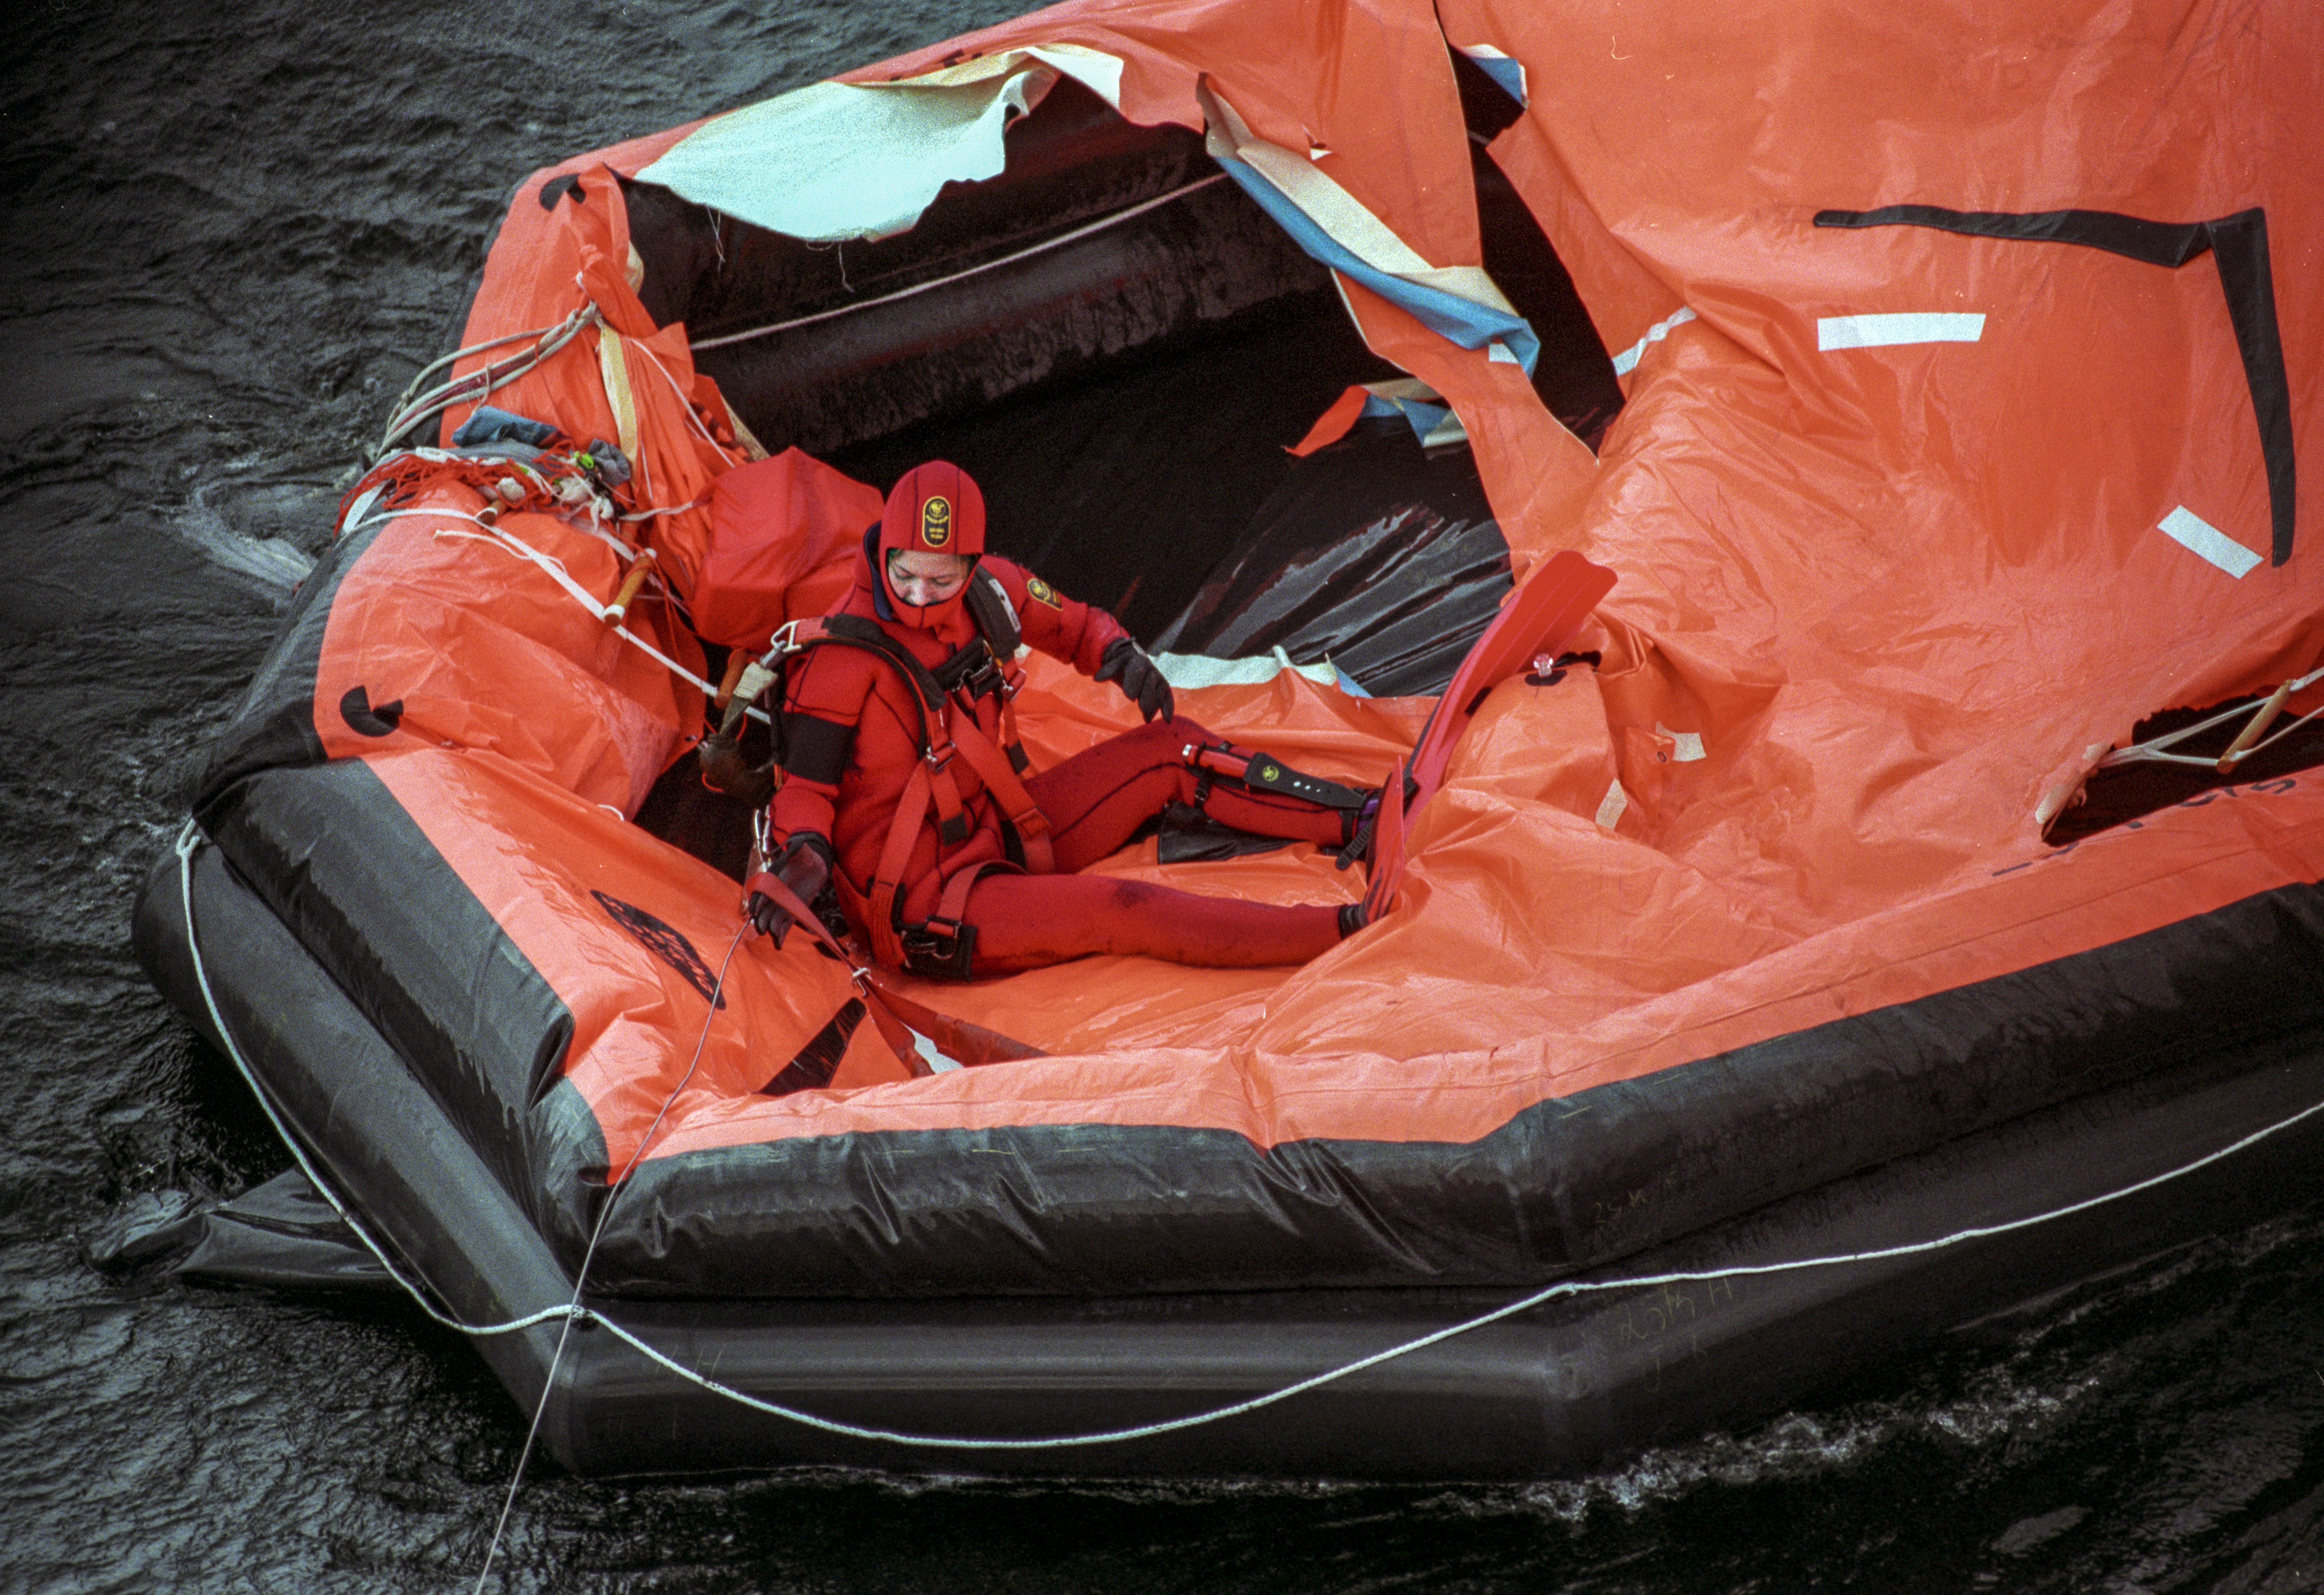 En grodman från räddningspersonalen inspekterar en livflotte i samband med räddningsaktionen under M/S Estonias förlisning. 